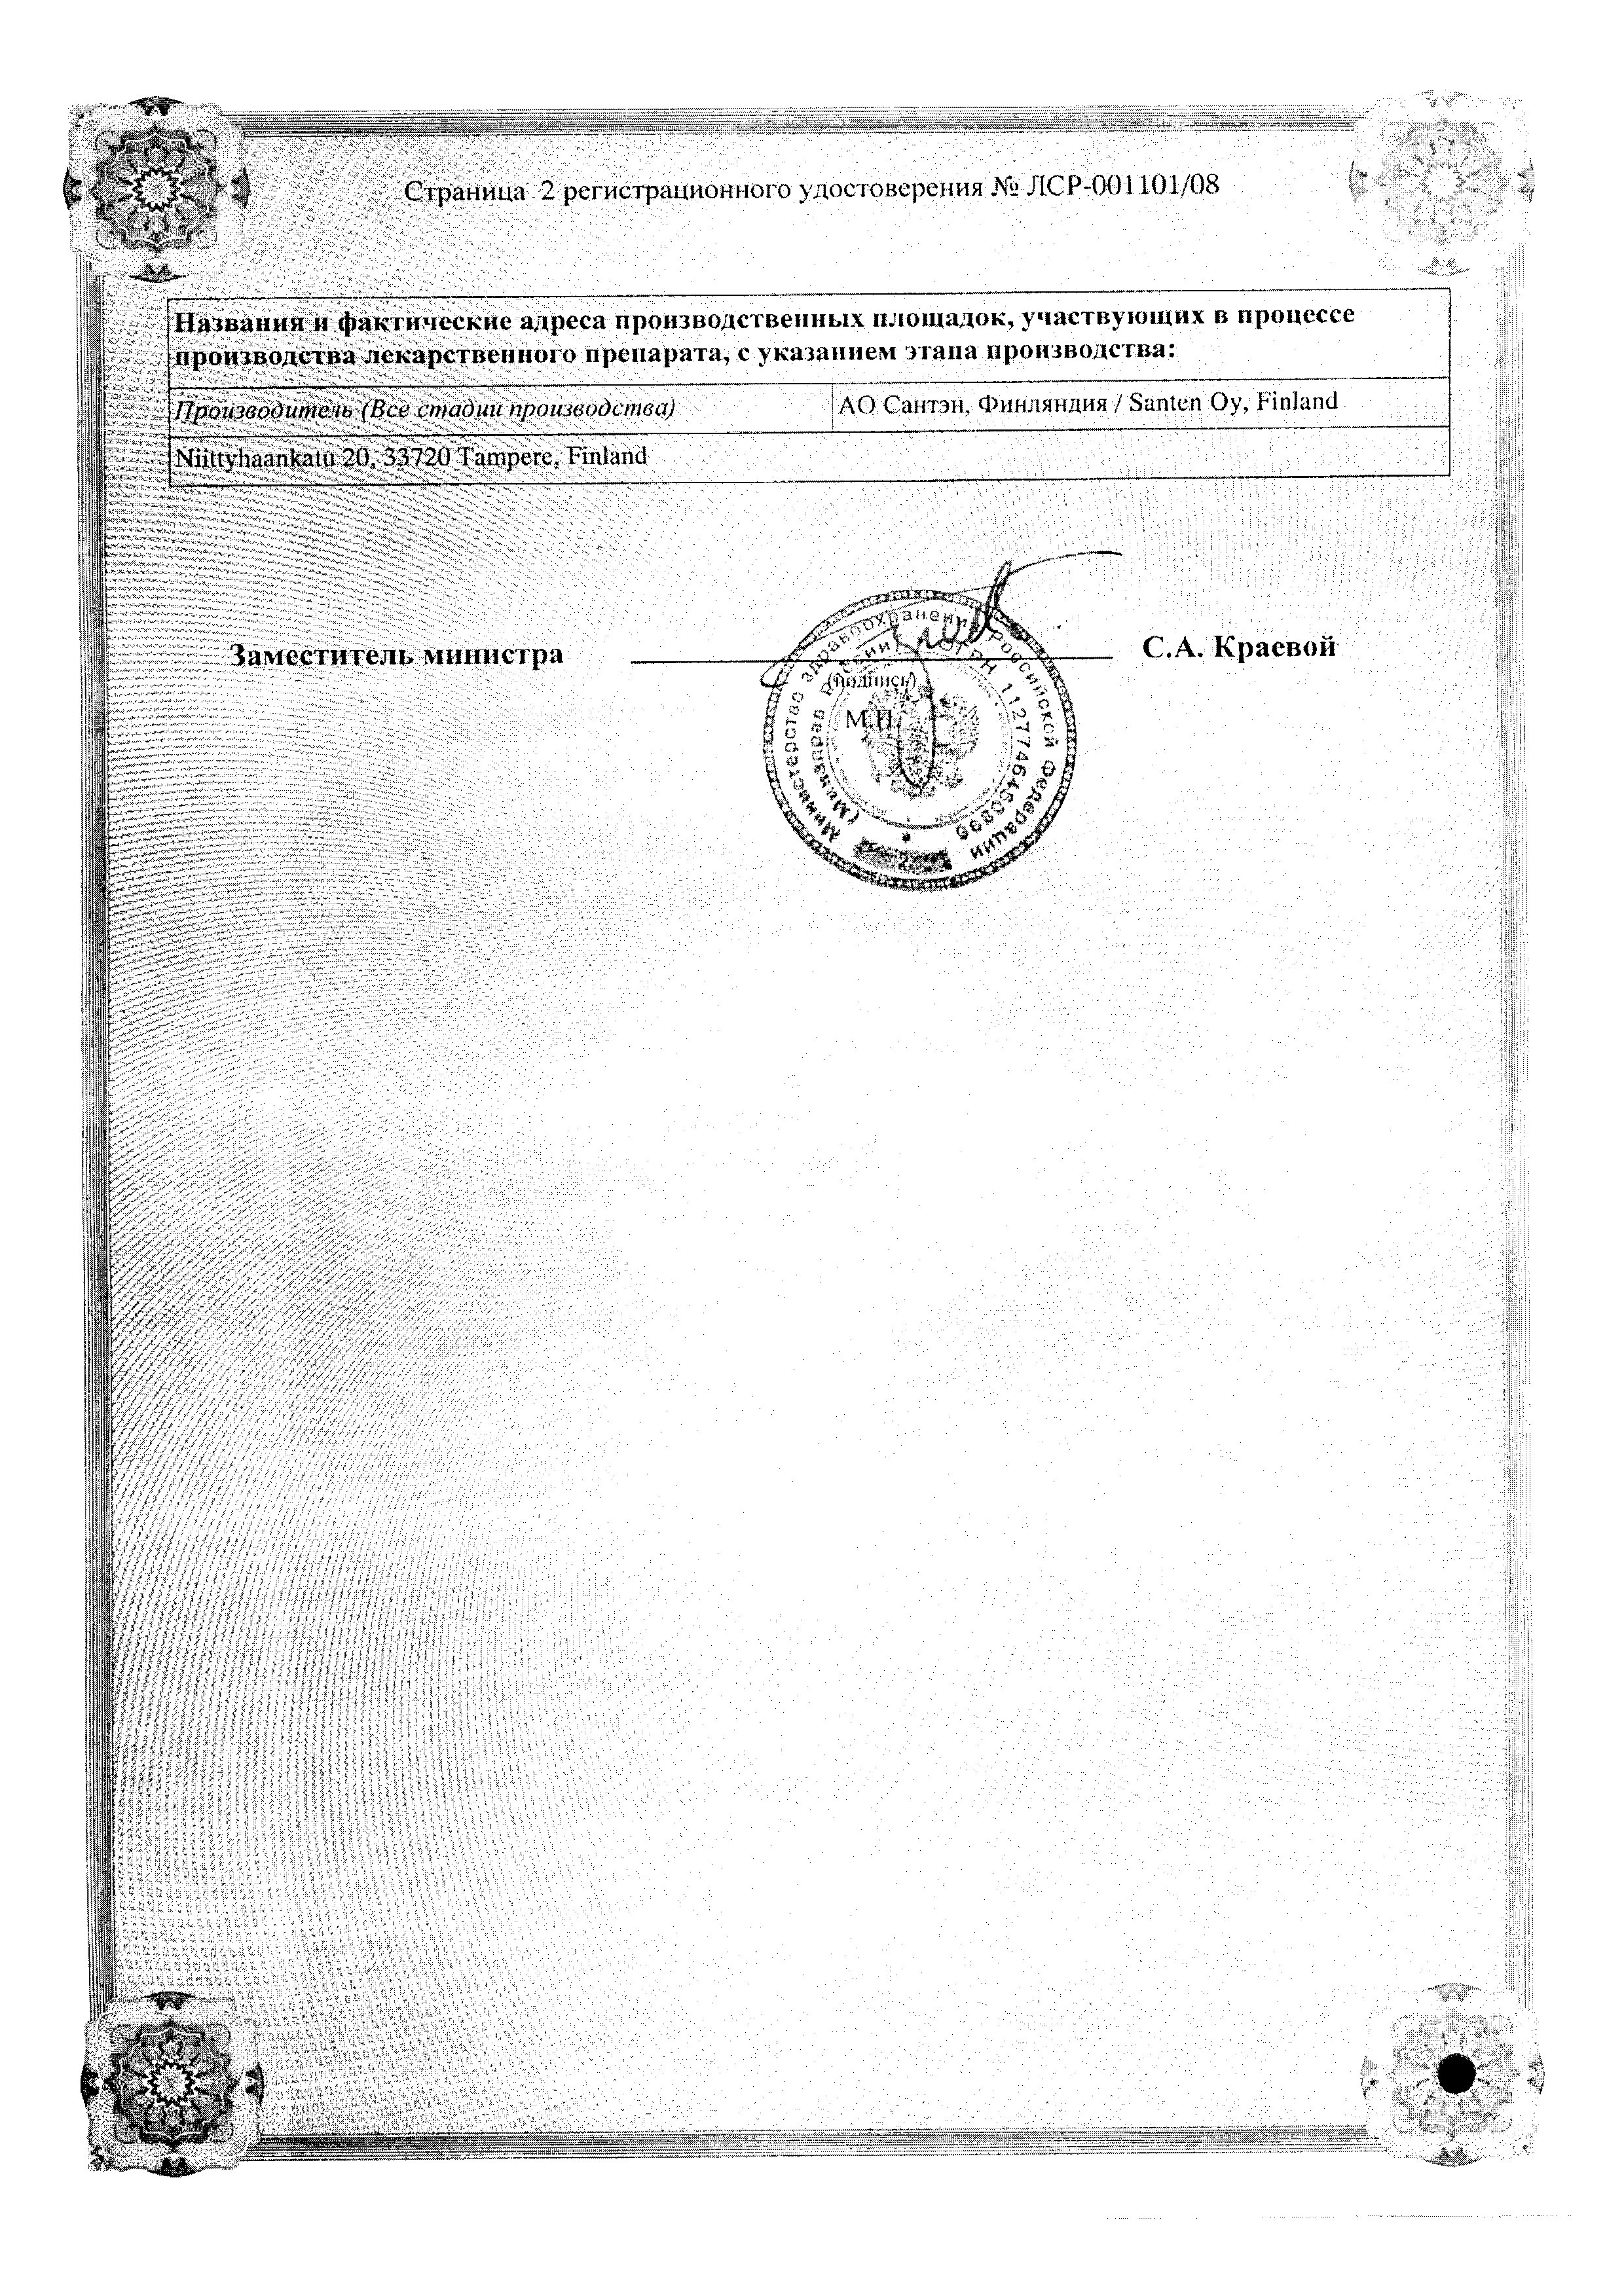 Офтаквикс сертификат